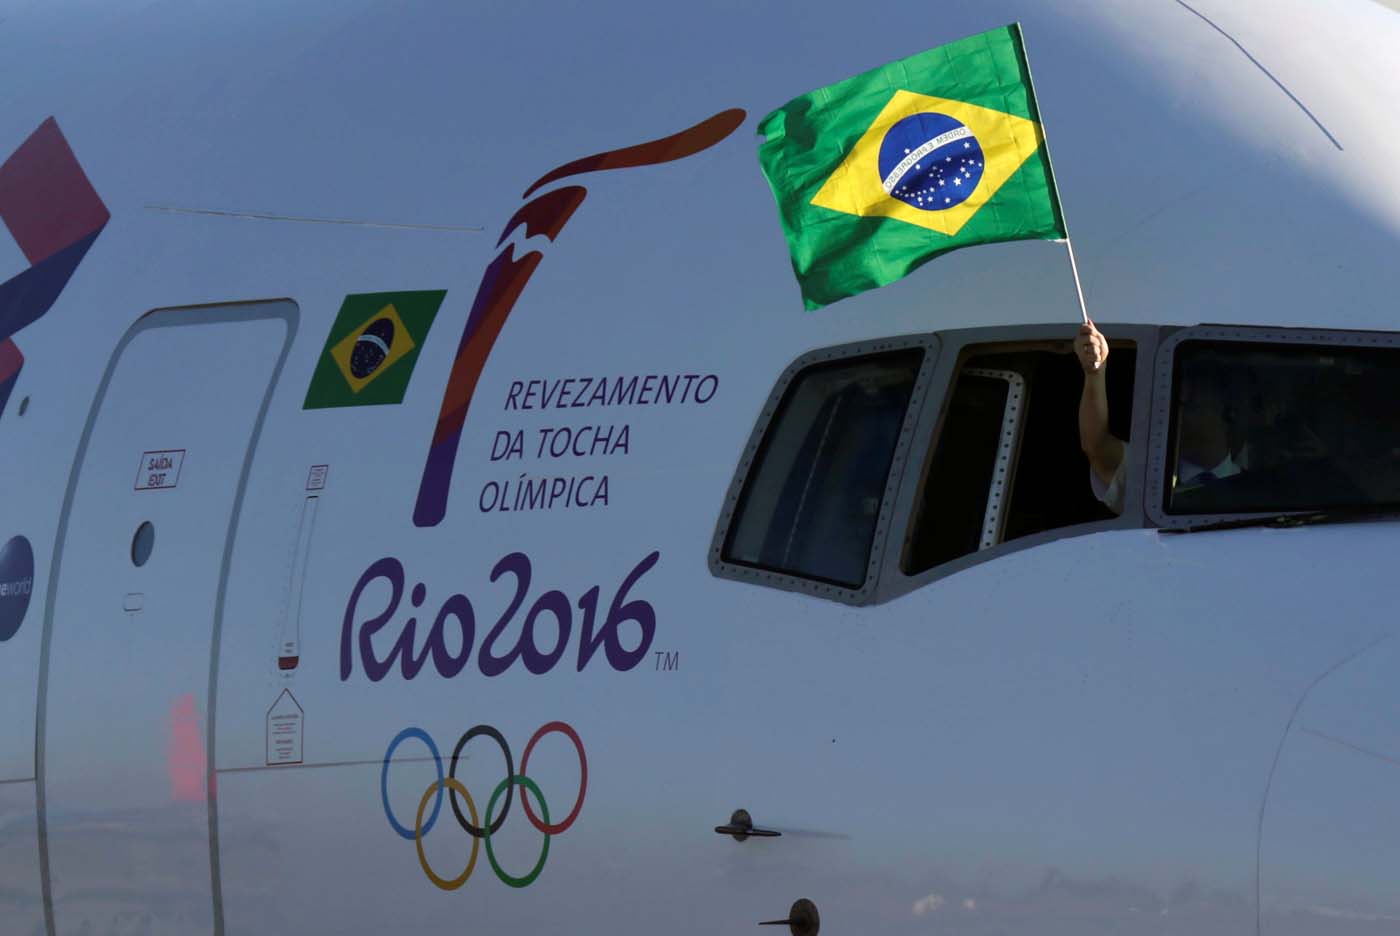 Juicio contra Rousseff no es incompatible con Olímpicos, dice Comité Río 2016